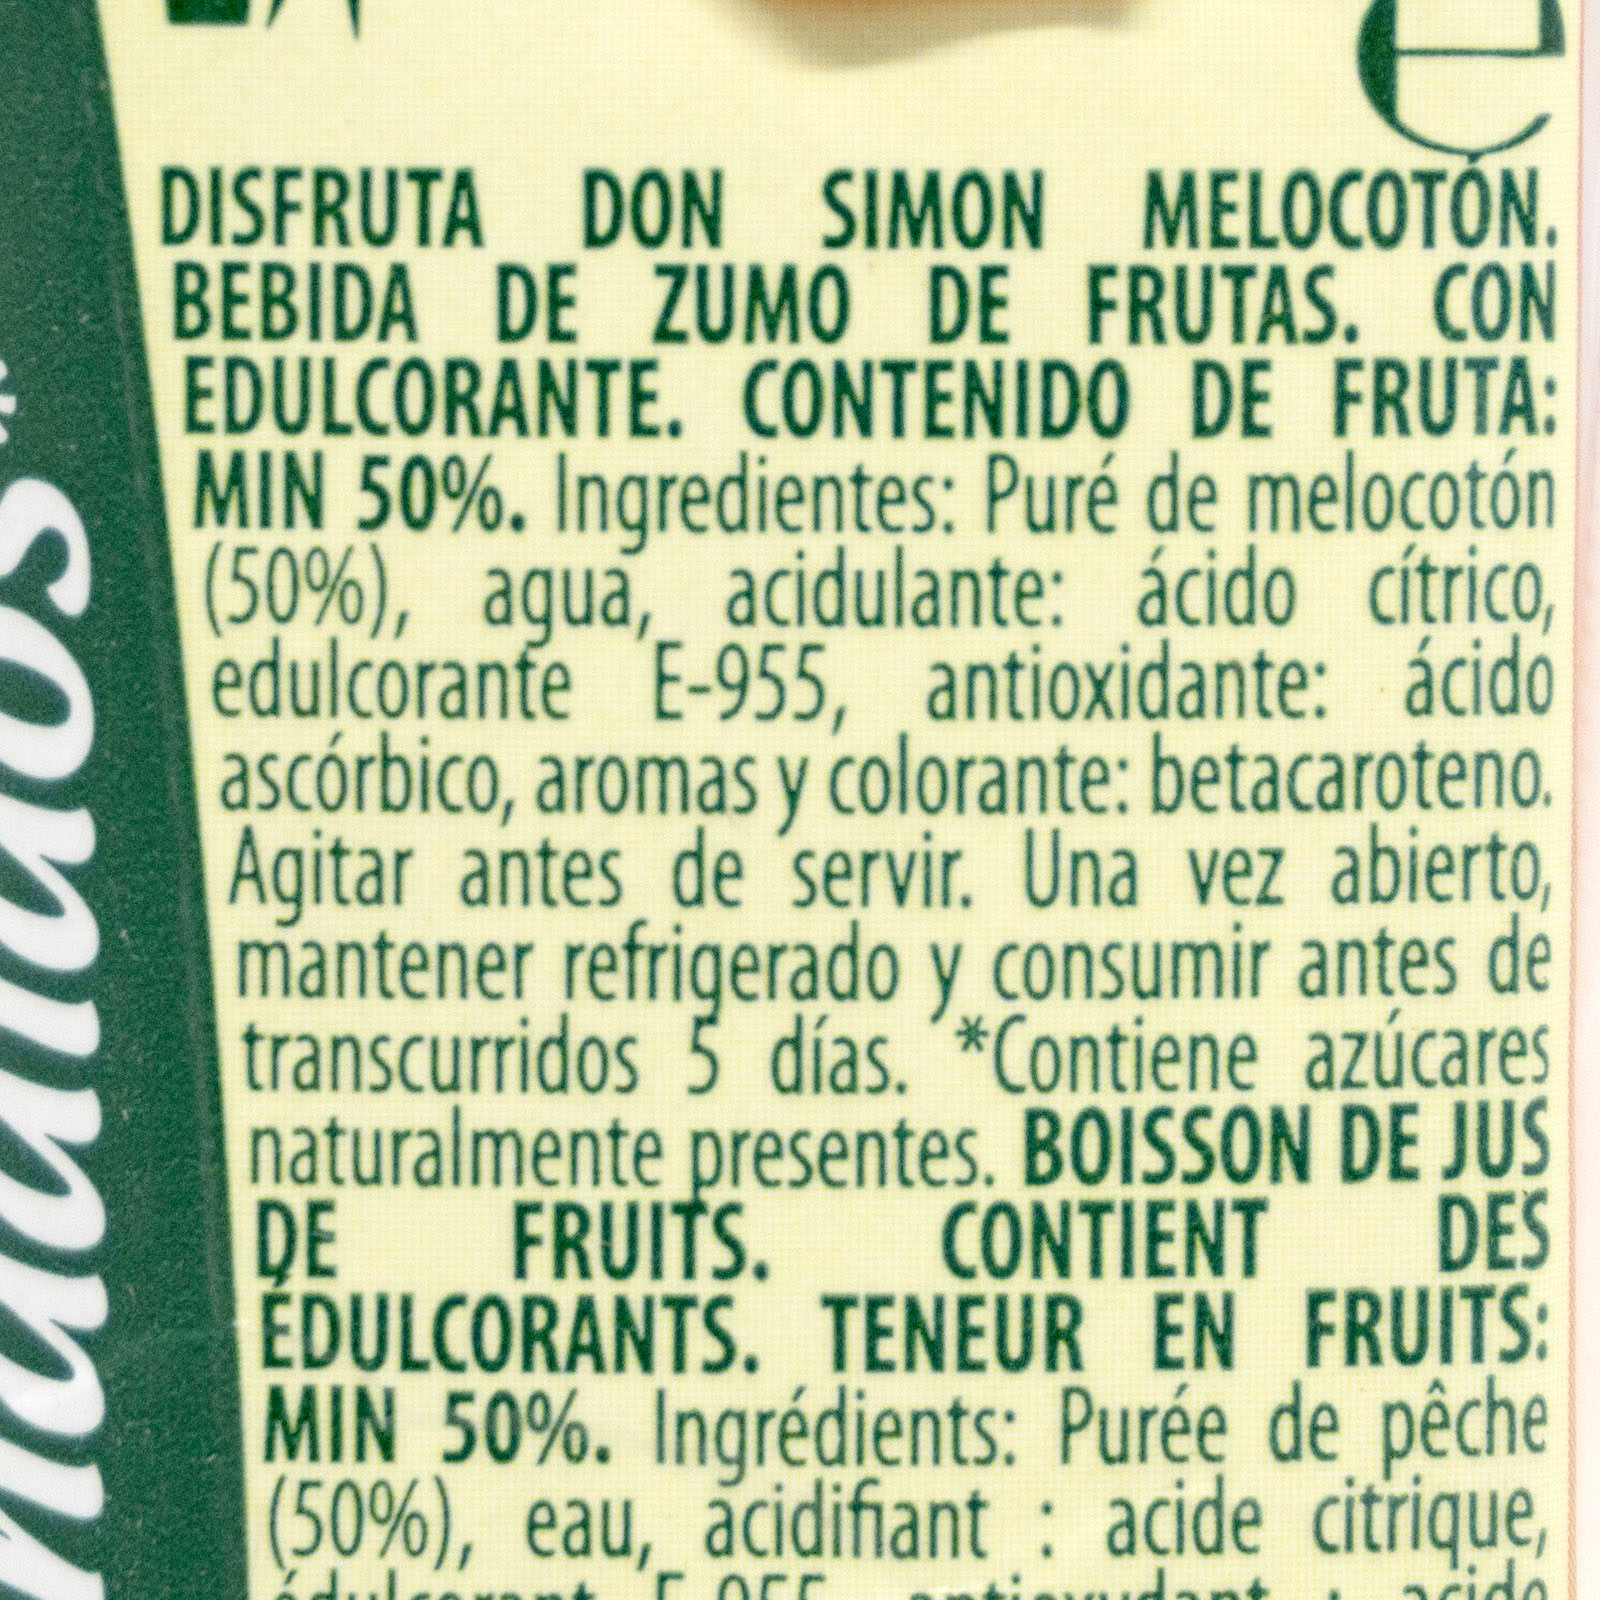 donsimon-melocoton-ingredientes